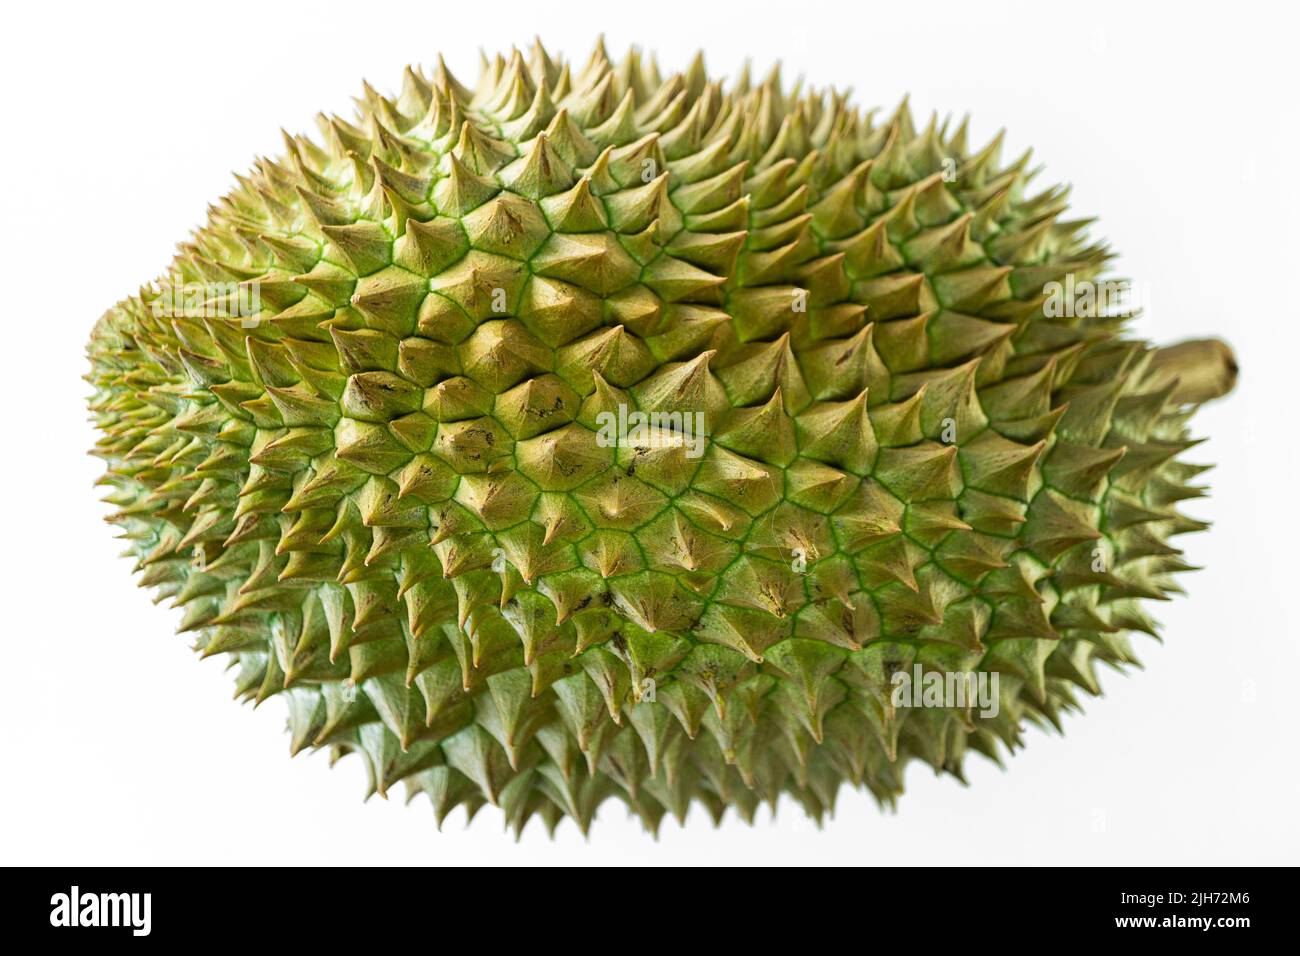 Durian, frutta tropicale contenente una polpa cremosa e aveva odore fetido. Foto Stock